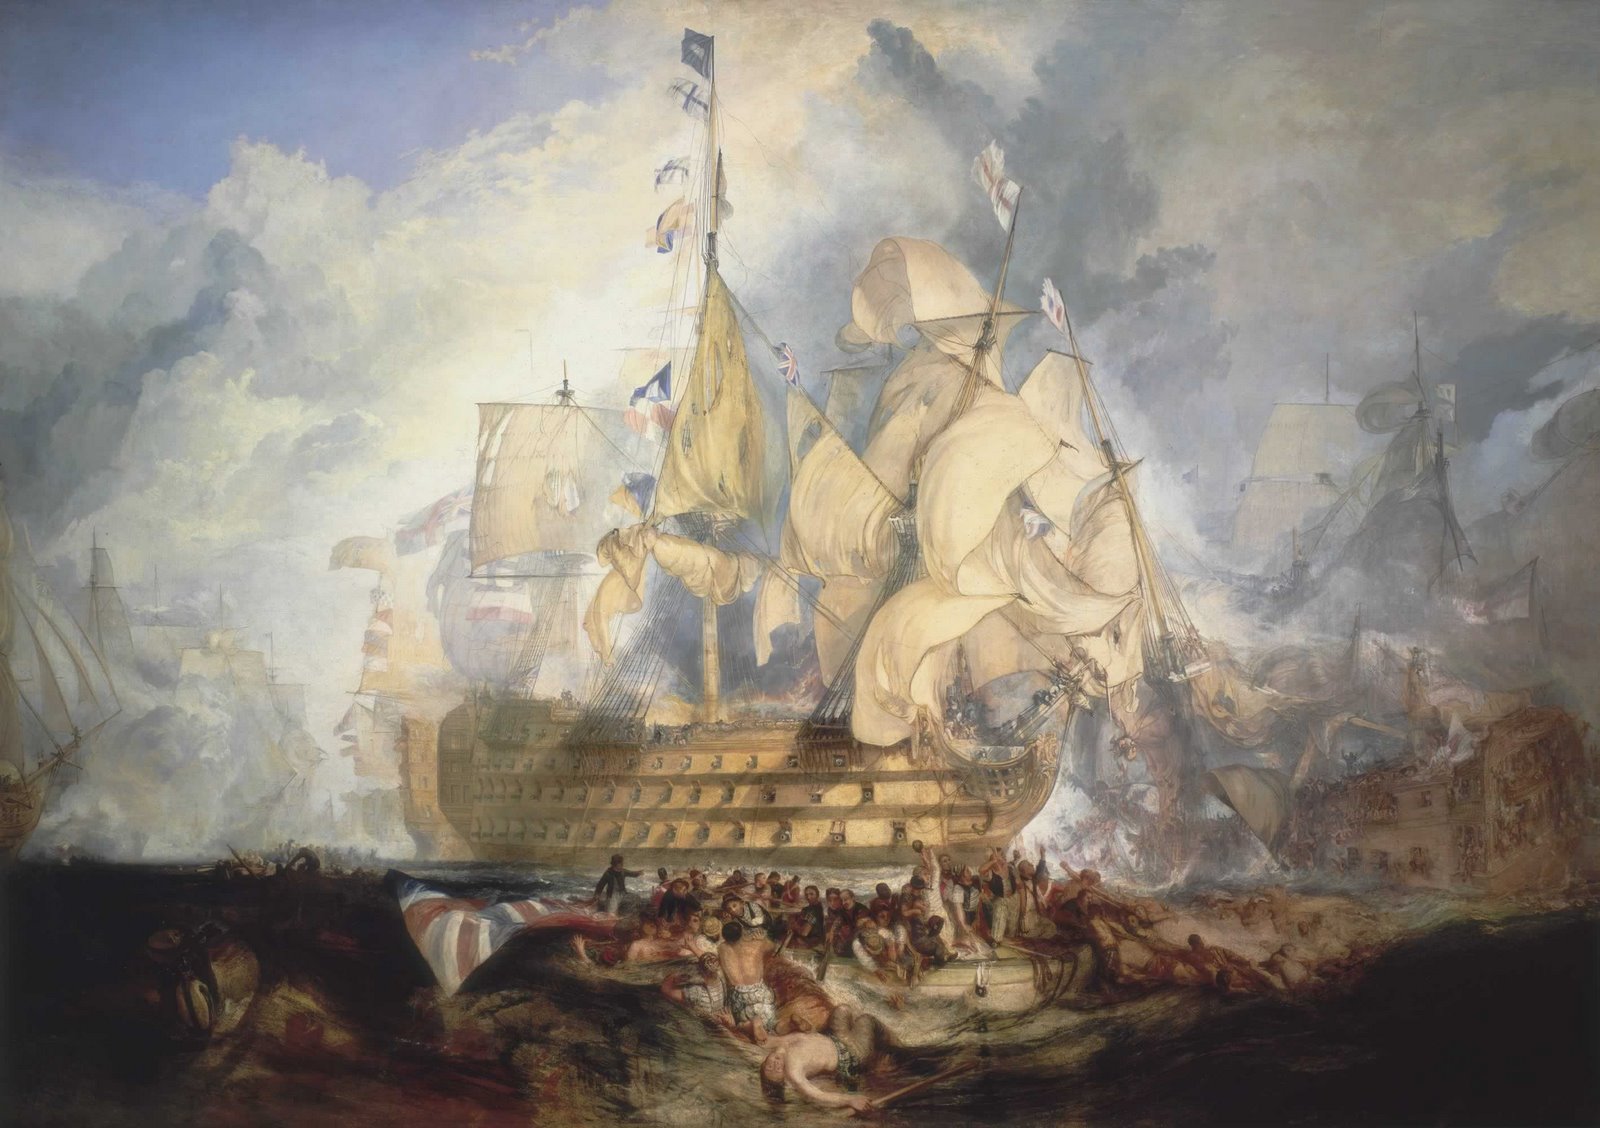 [The+Battle+of+Trafalgar,+21+October+1805,.jpg]